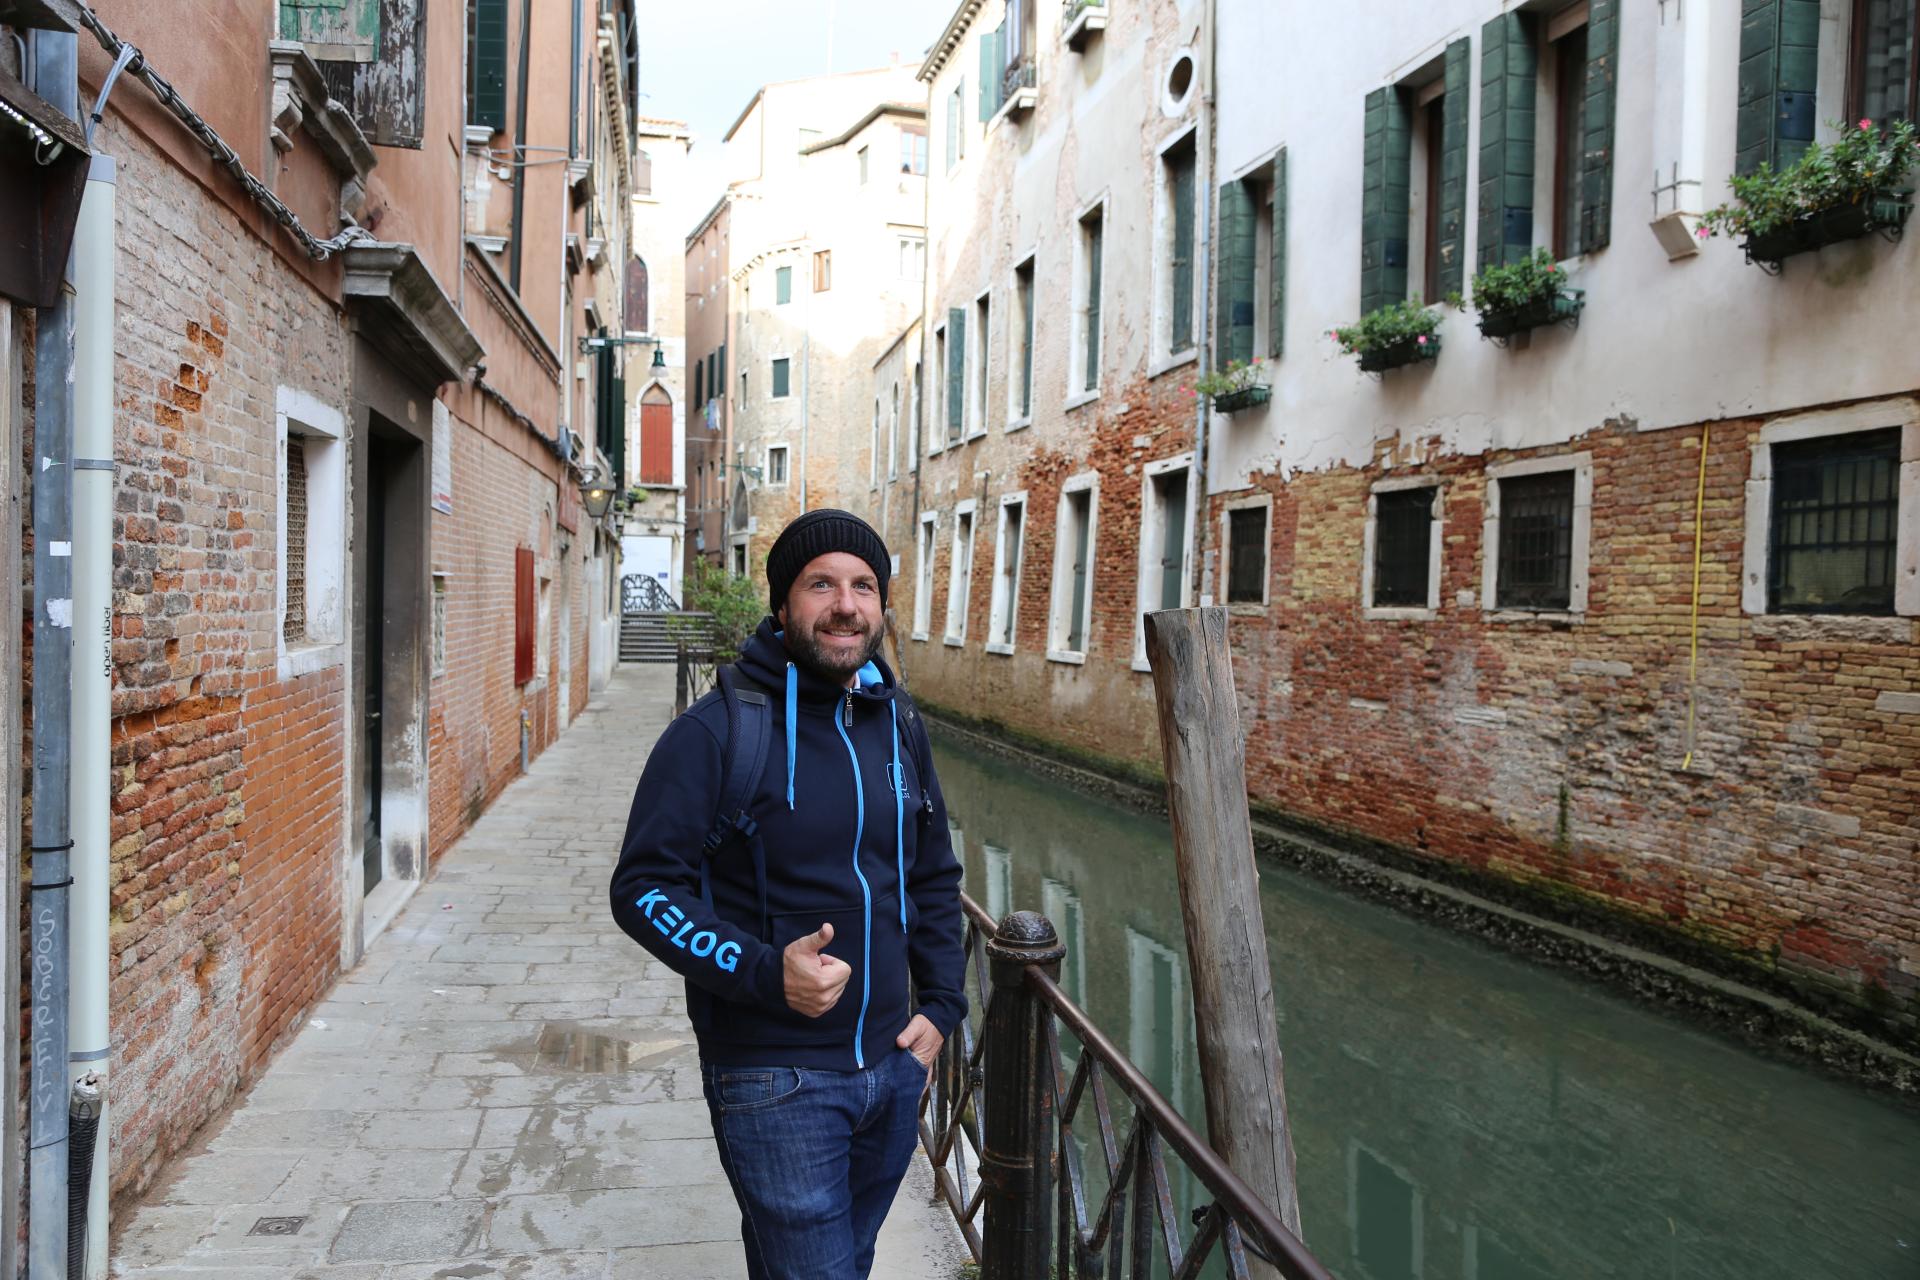 Einer von 30 Millionen Besuchern pro Jahr. - Gebäude, Kanäle, Personen, Wasser - WEISSINGER Andreas - (Venedig, Venezia, Veneto, Italien)